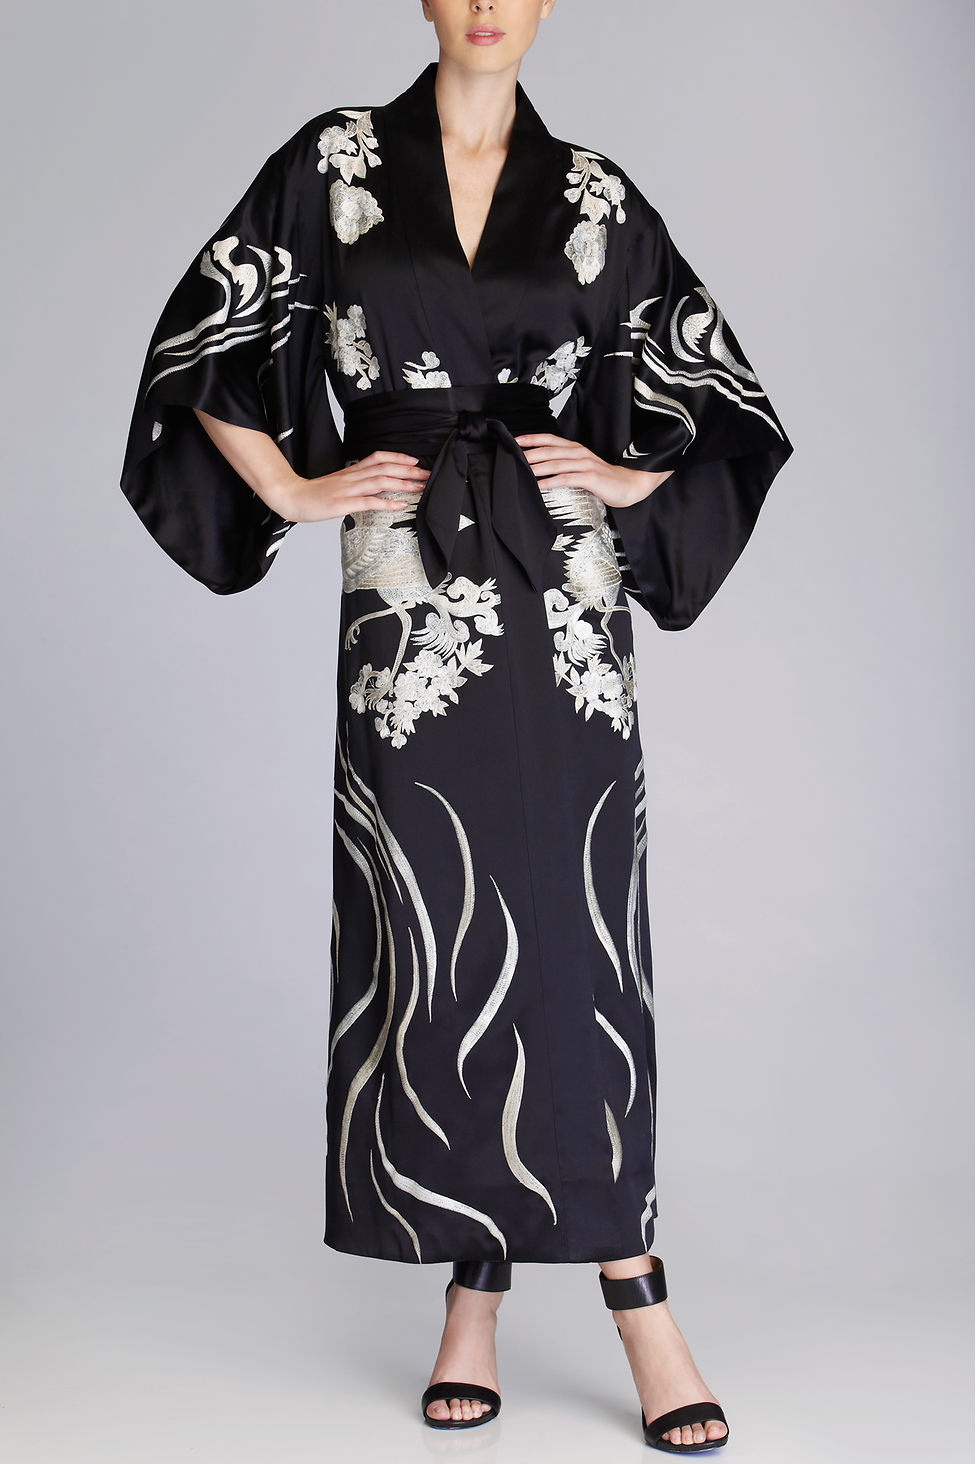 Lyst - Natori Couture Sarimanok Robe in Black